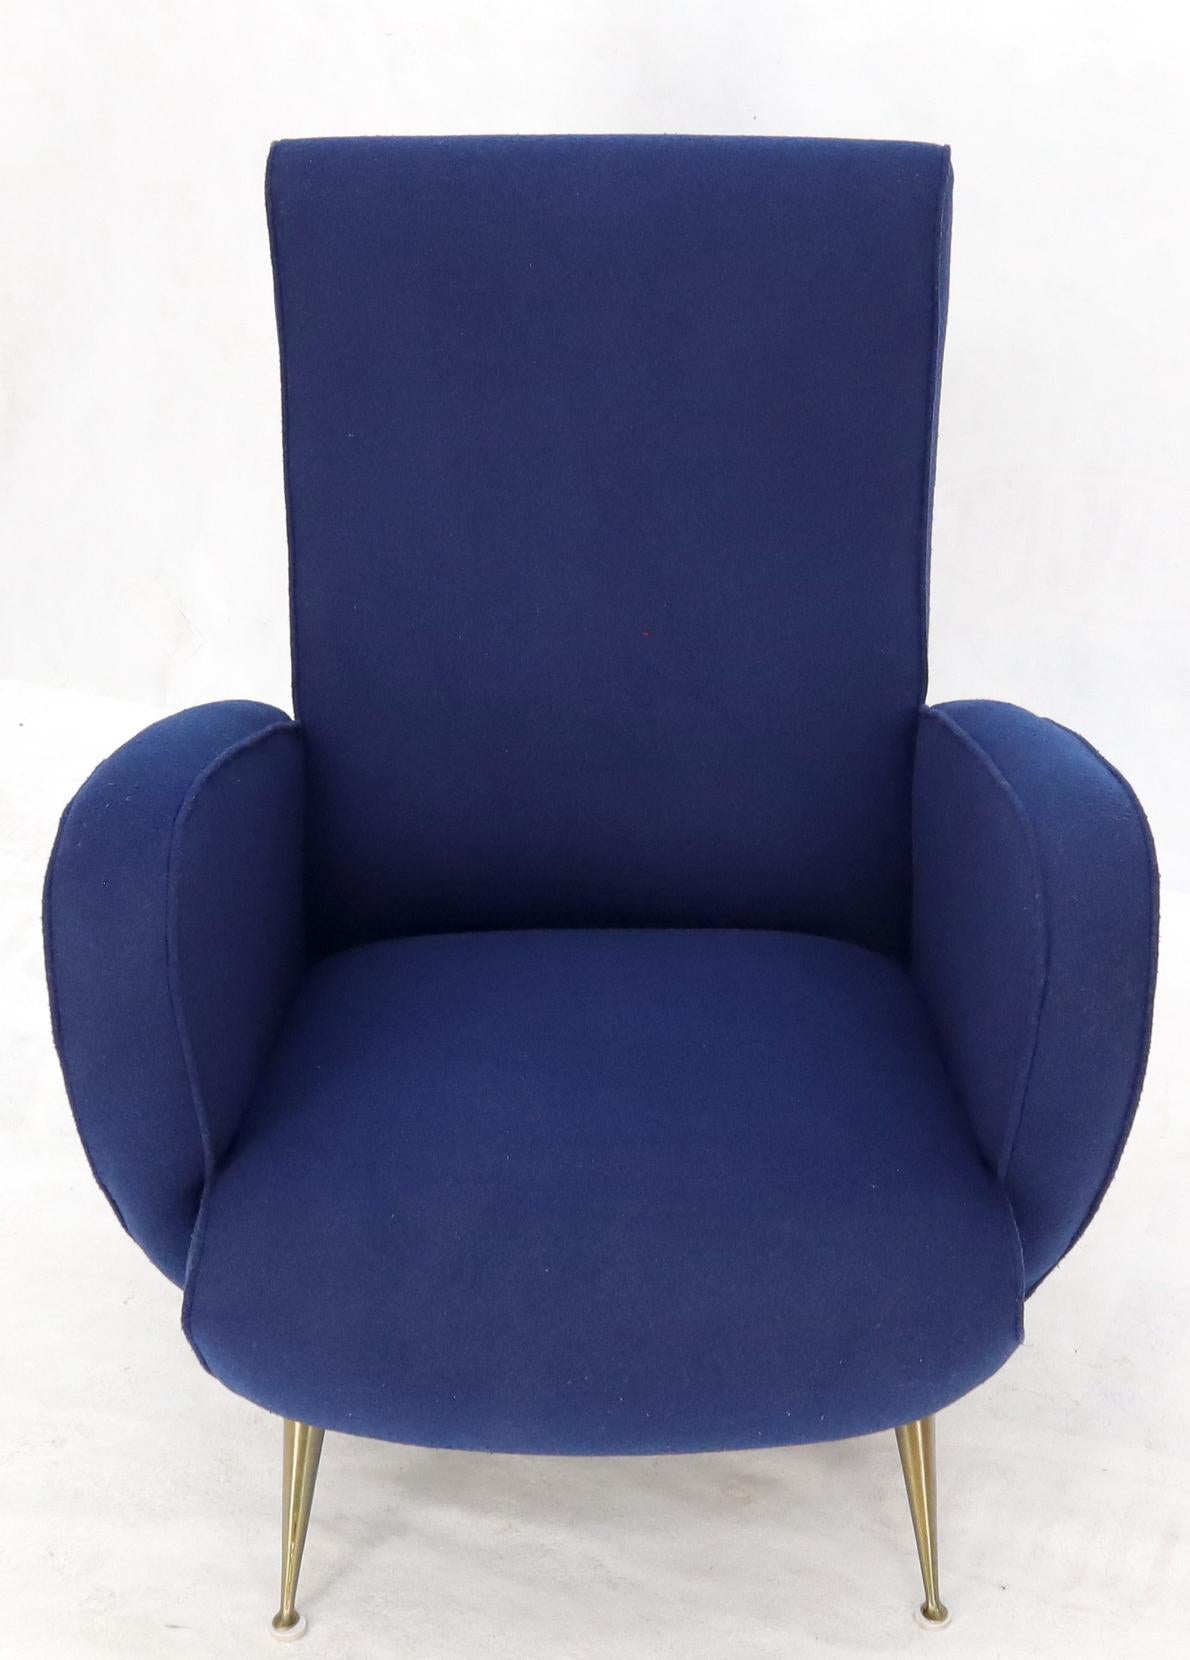 Atemberaubende neue marineblau gepolstert Italienisch Mid-Century Modern Lounge-Stuhl auf Kegel Form Messing Beine. Paolo Buffa, Gio Ponti Dekor Spiel.